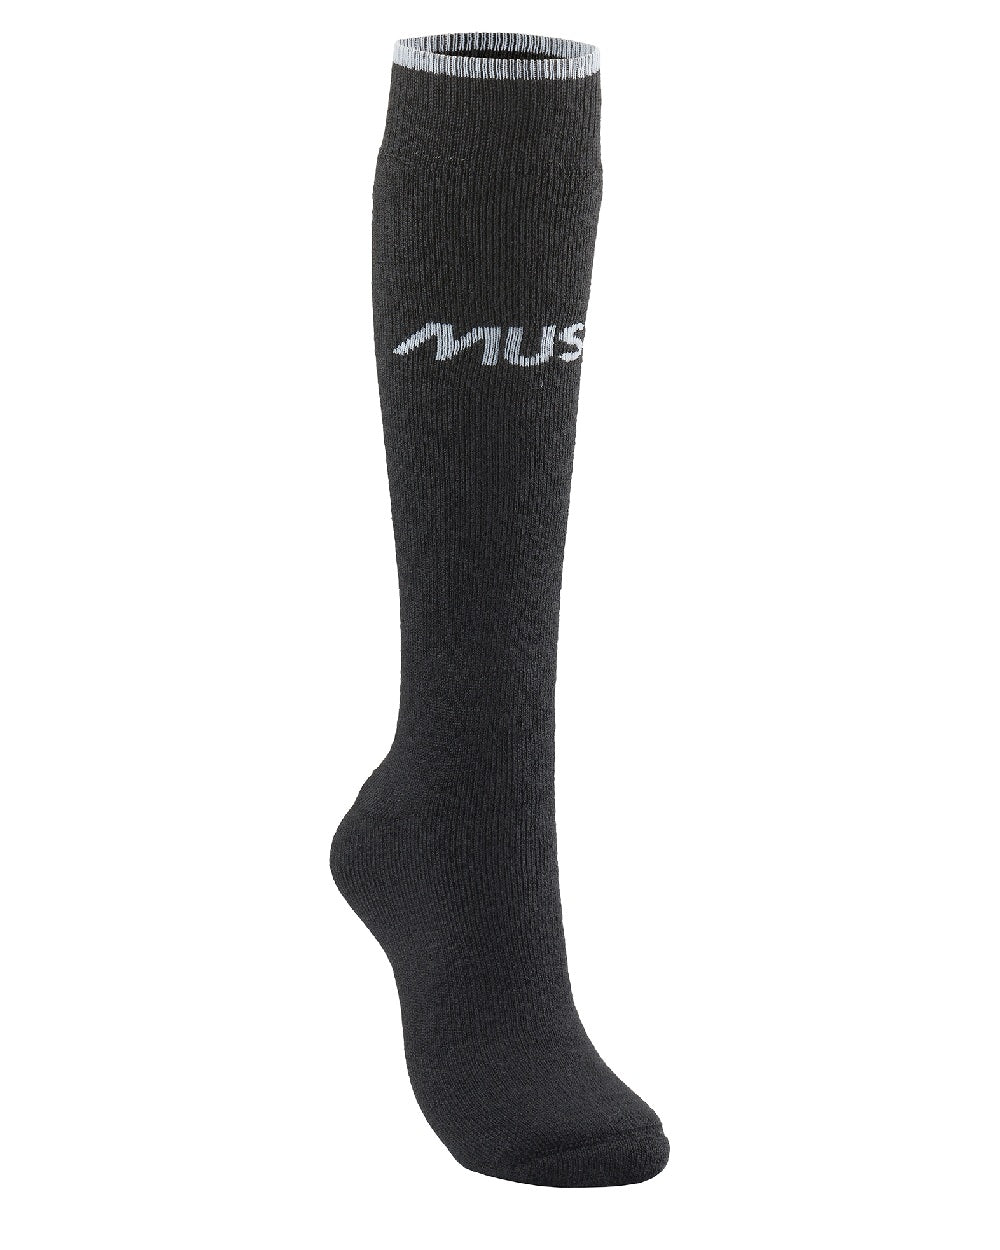 Musto Thermal Long Socks in Black